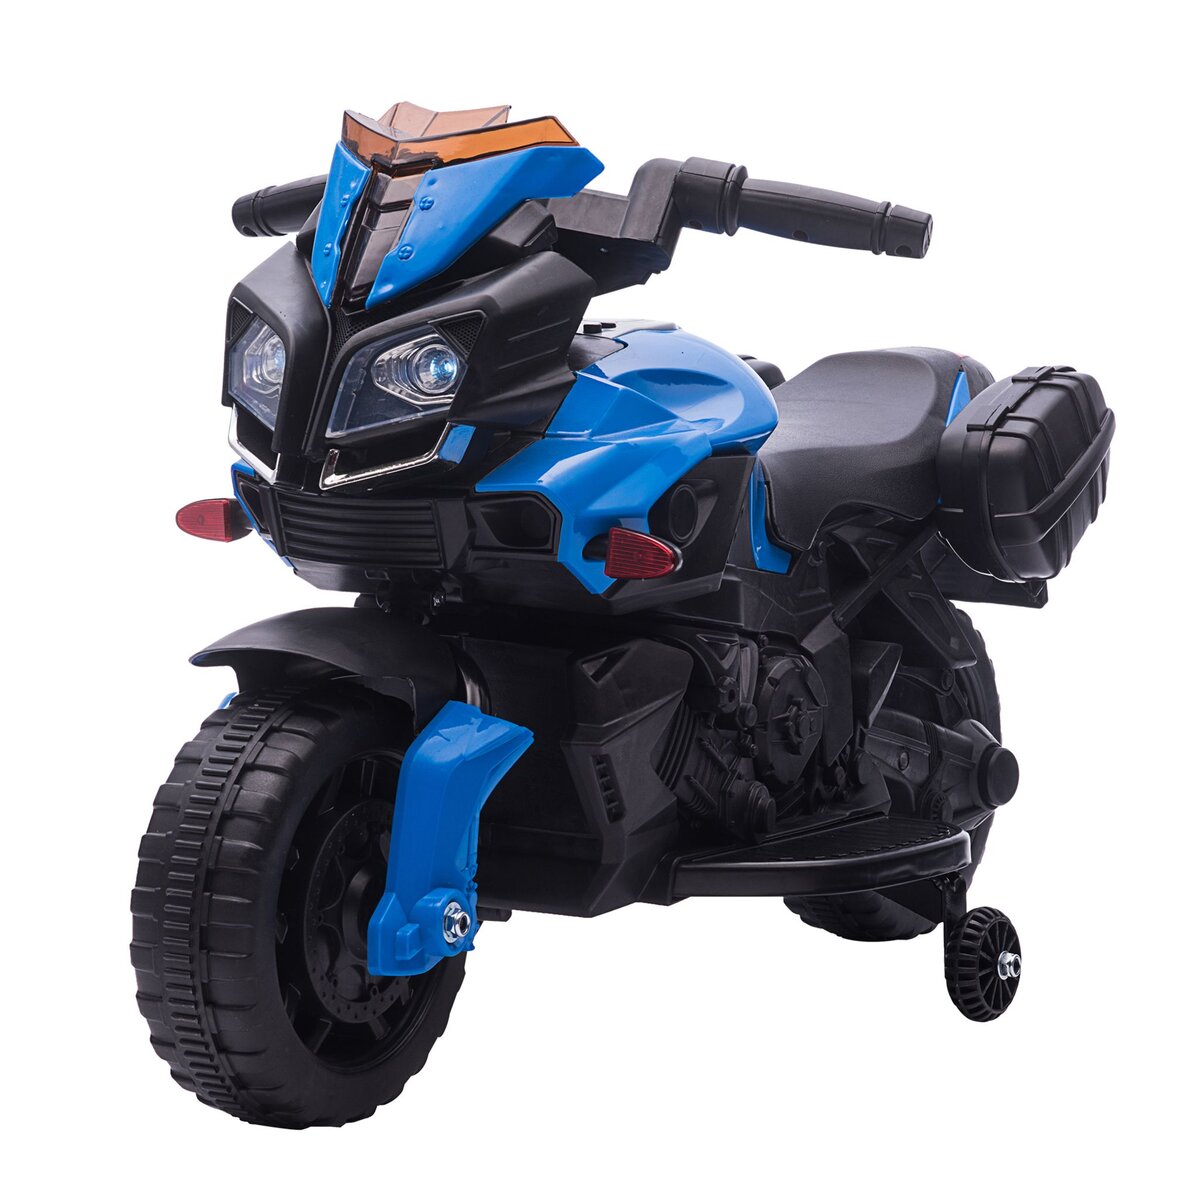 HOMCOM Moto électrique enfant 6 V 3 Km/h effet lumineux et sonore roulettes  amovibles repose-pied valises latérales métal PP bleu noir pas cher 